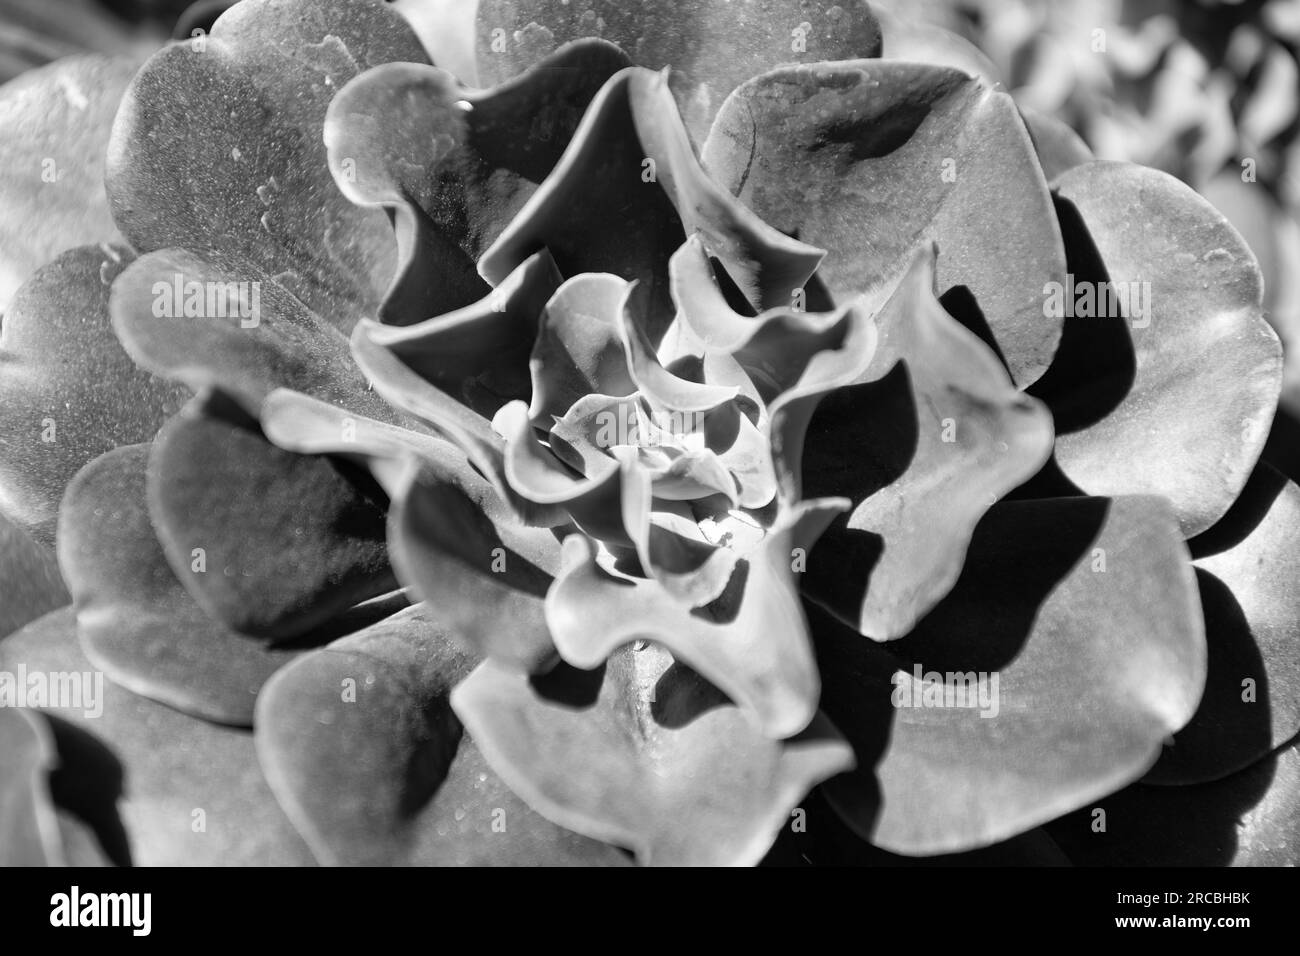 crassulaceae succulent cactus with dark leaves. cactaceae background Stock Photo